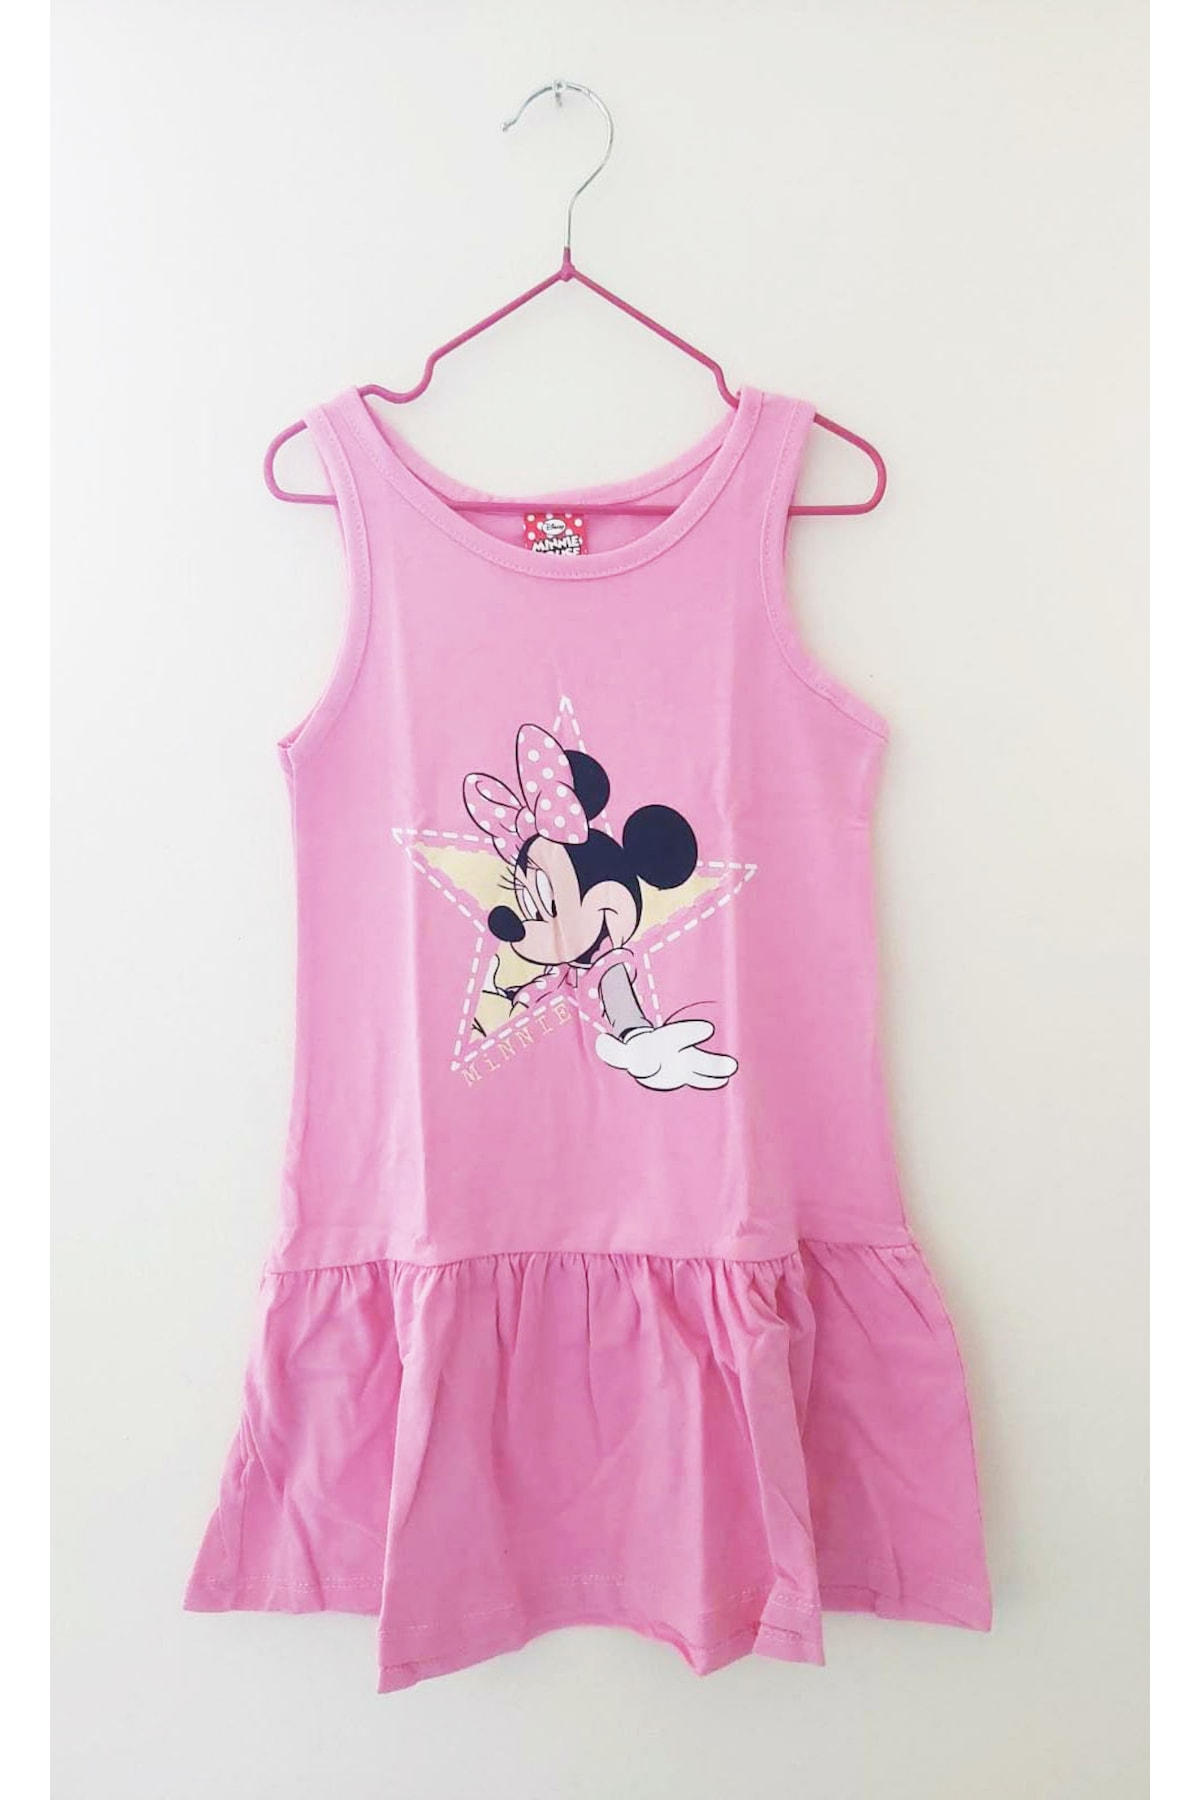 Minnie Mouse Kız Çocuk Elbise ve Jile Modelleri Nelerdir?